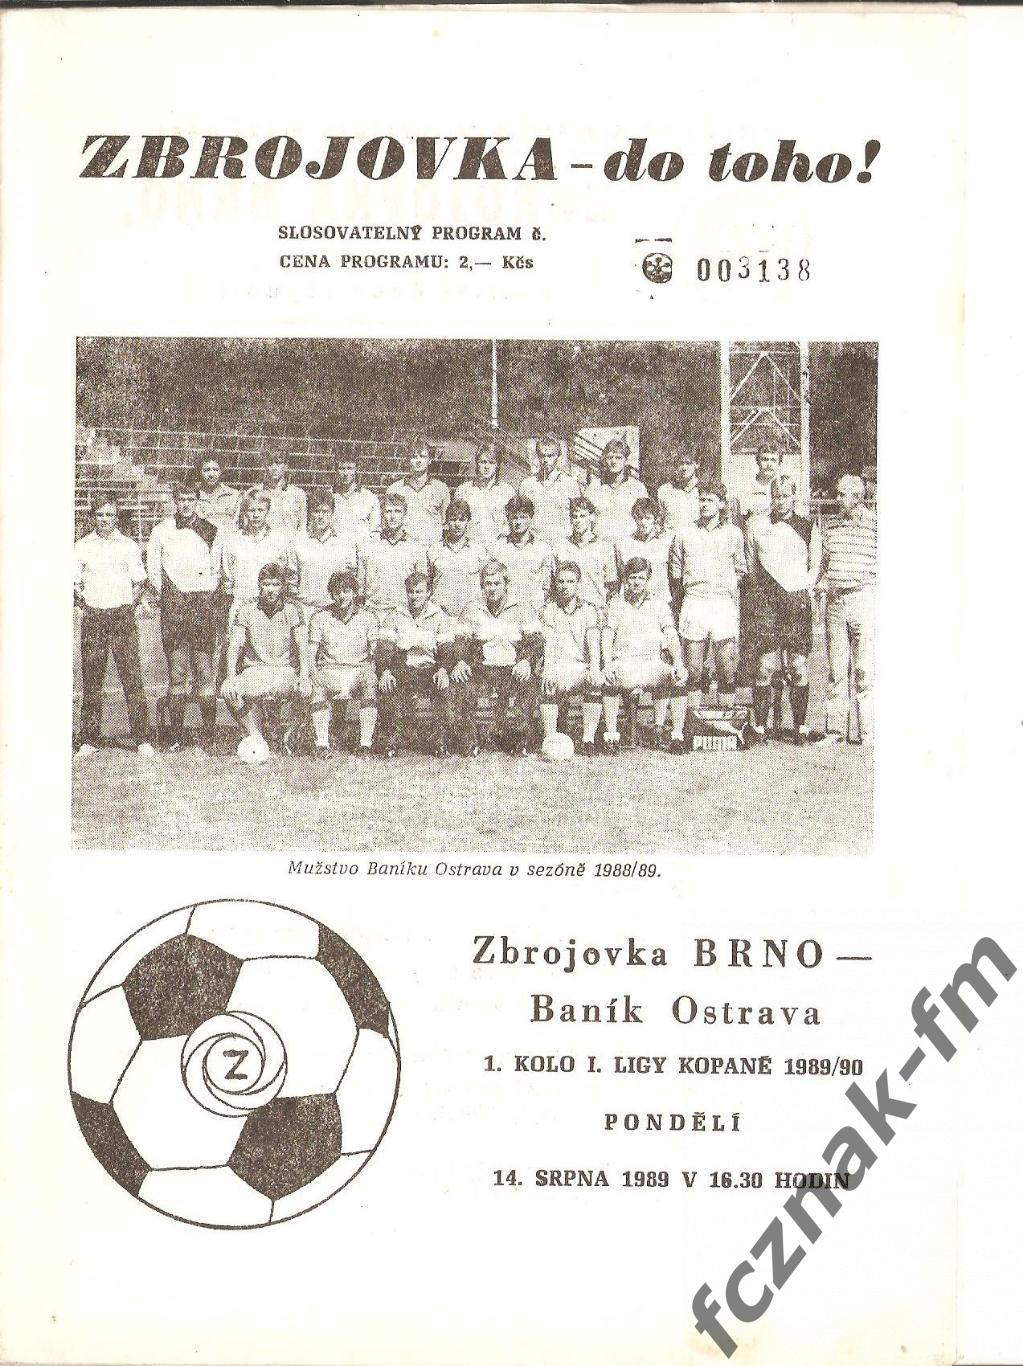 Чехословакия Збройовка Брно Баник Острава Zbrojovka Brno - Banik Ostrava 1989